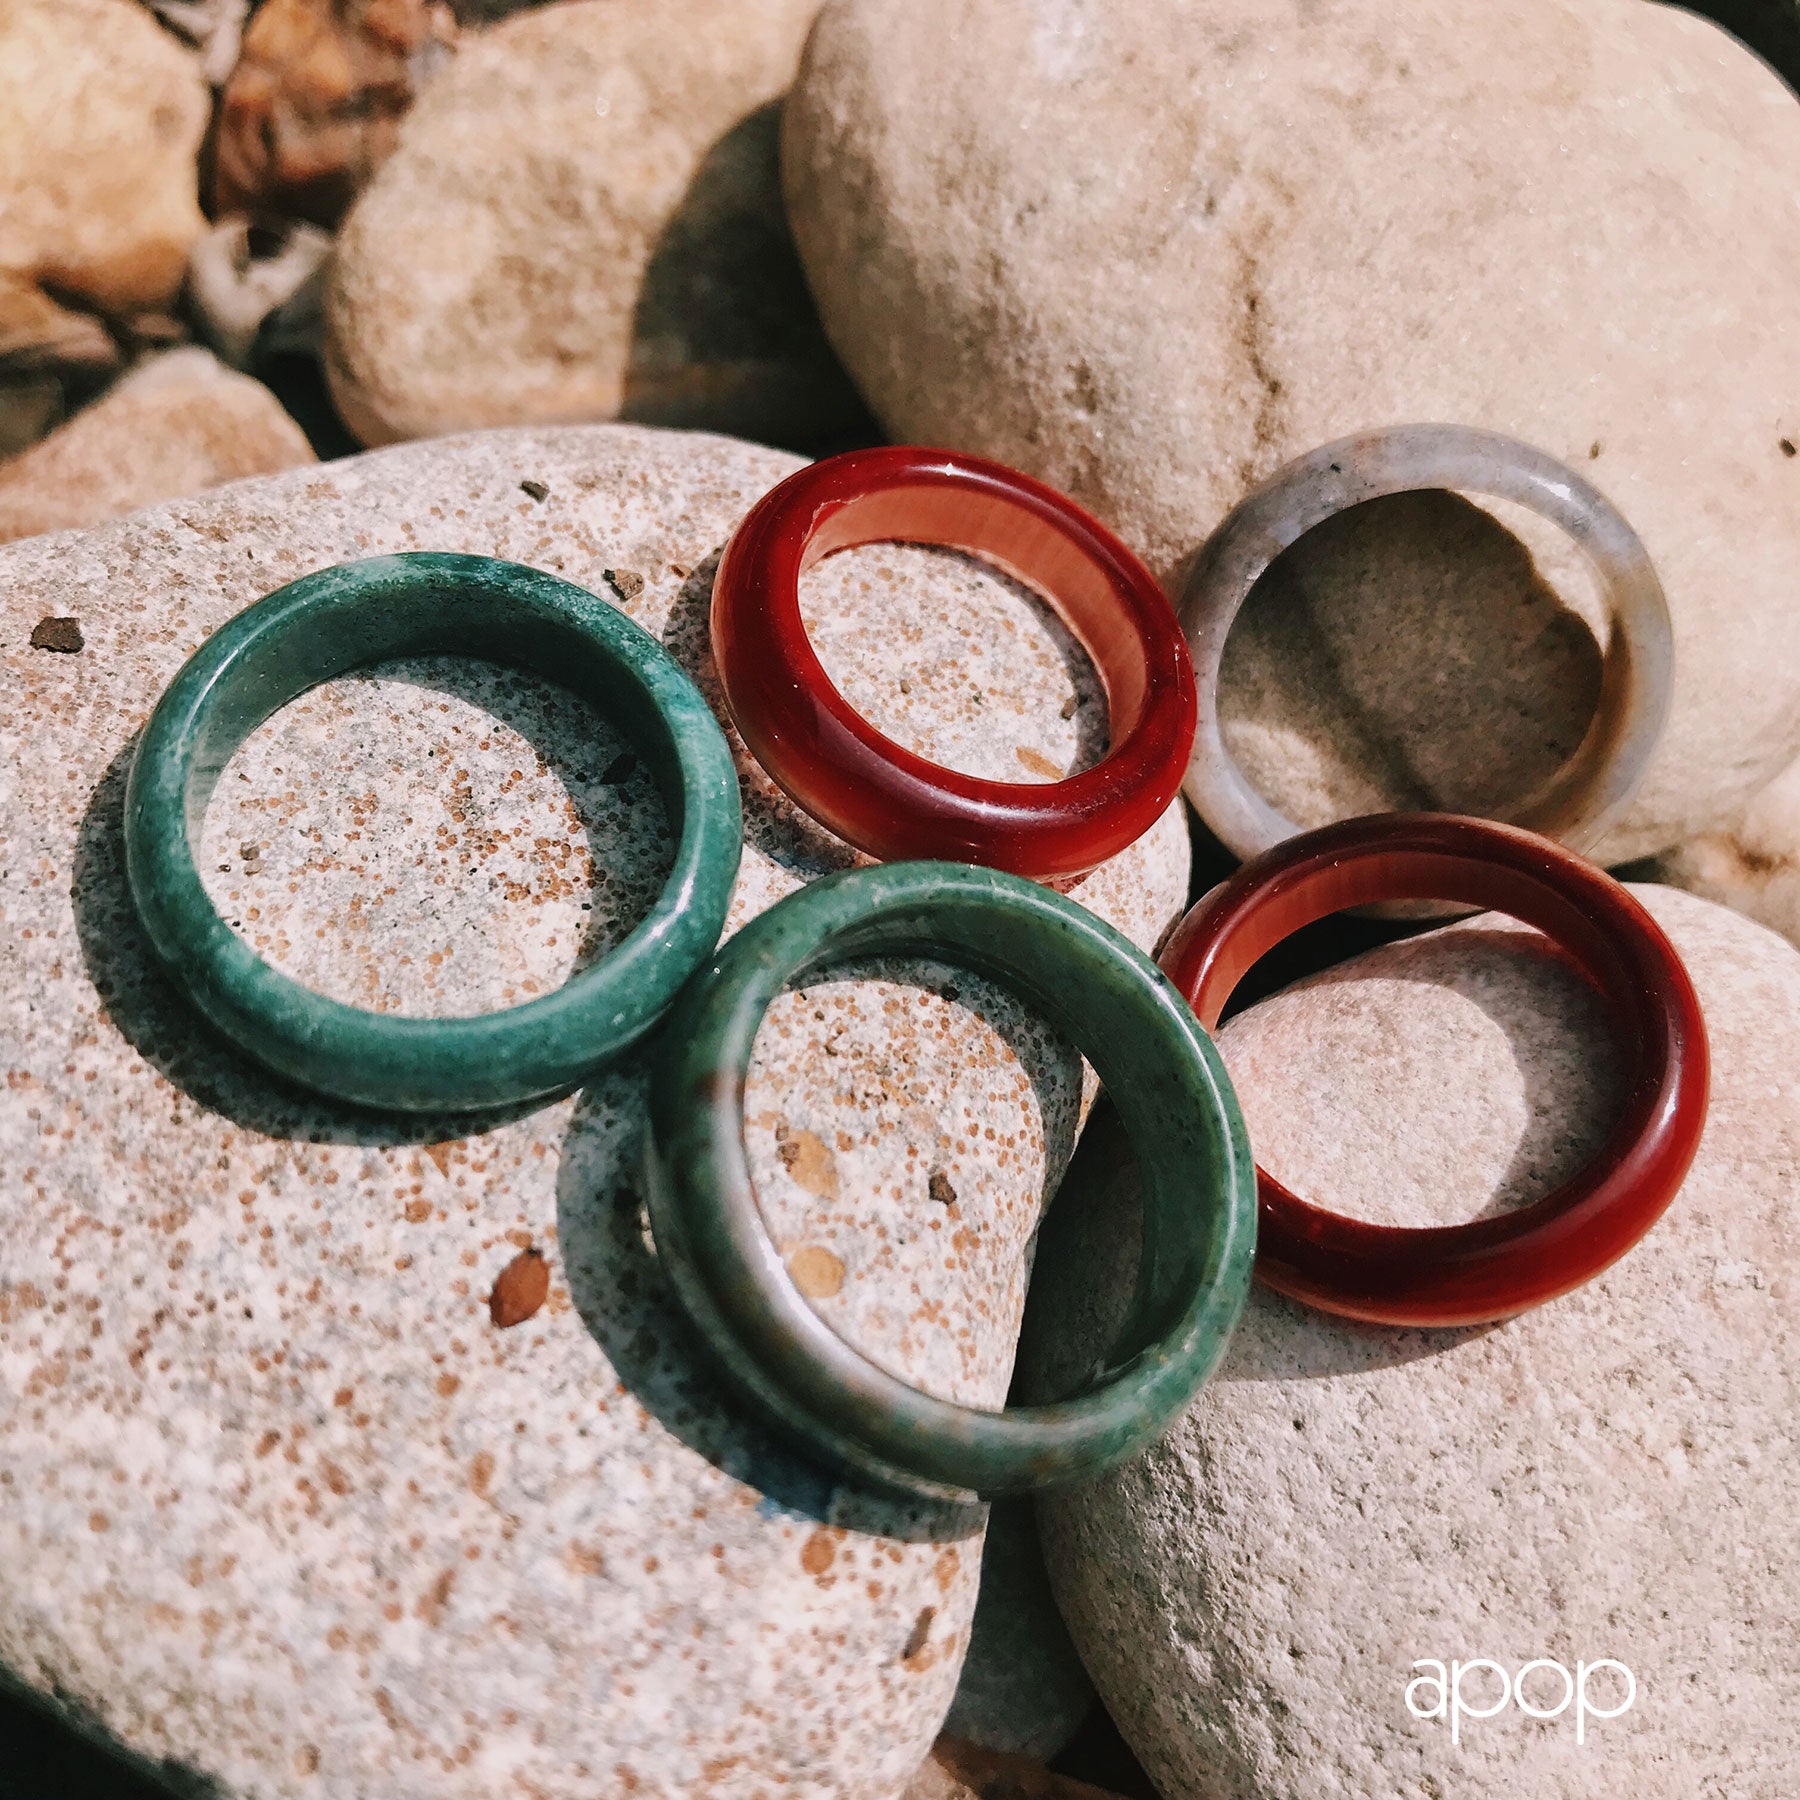 Chic Green Rectangular Stone Ring – Ciunofor